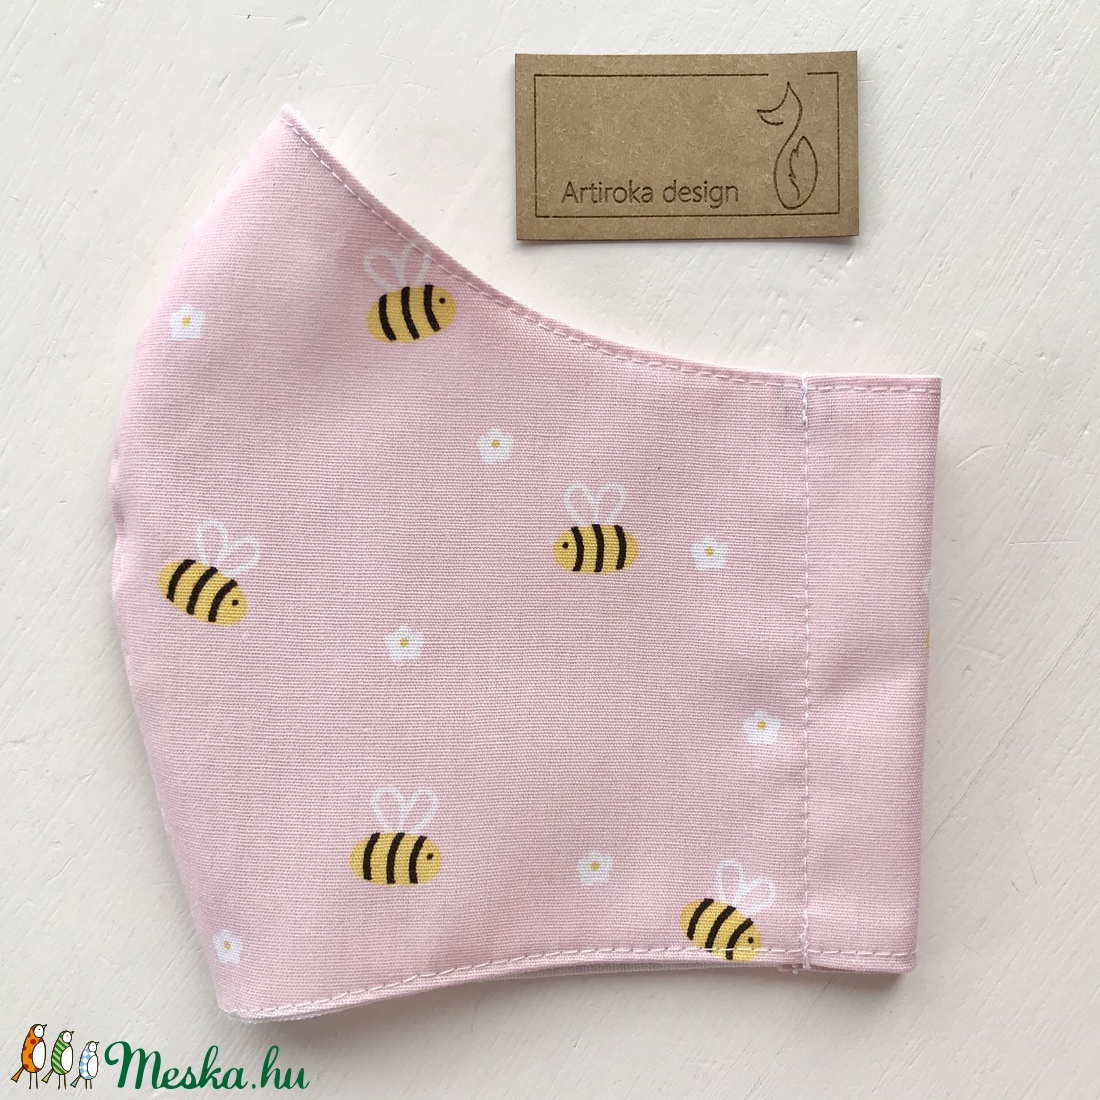 Méhecske és virág mintás pasztell rózsaszín, prémium maszk, arcmaszk - Artiroka design - maszk, arcmaszk - férfi & uniszex - Meska.hu